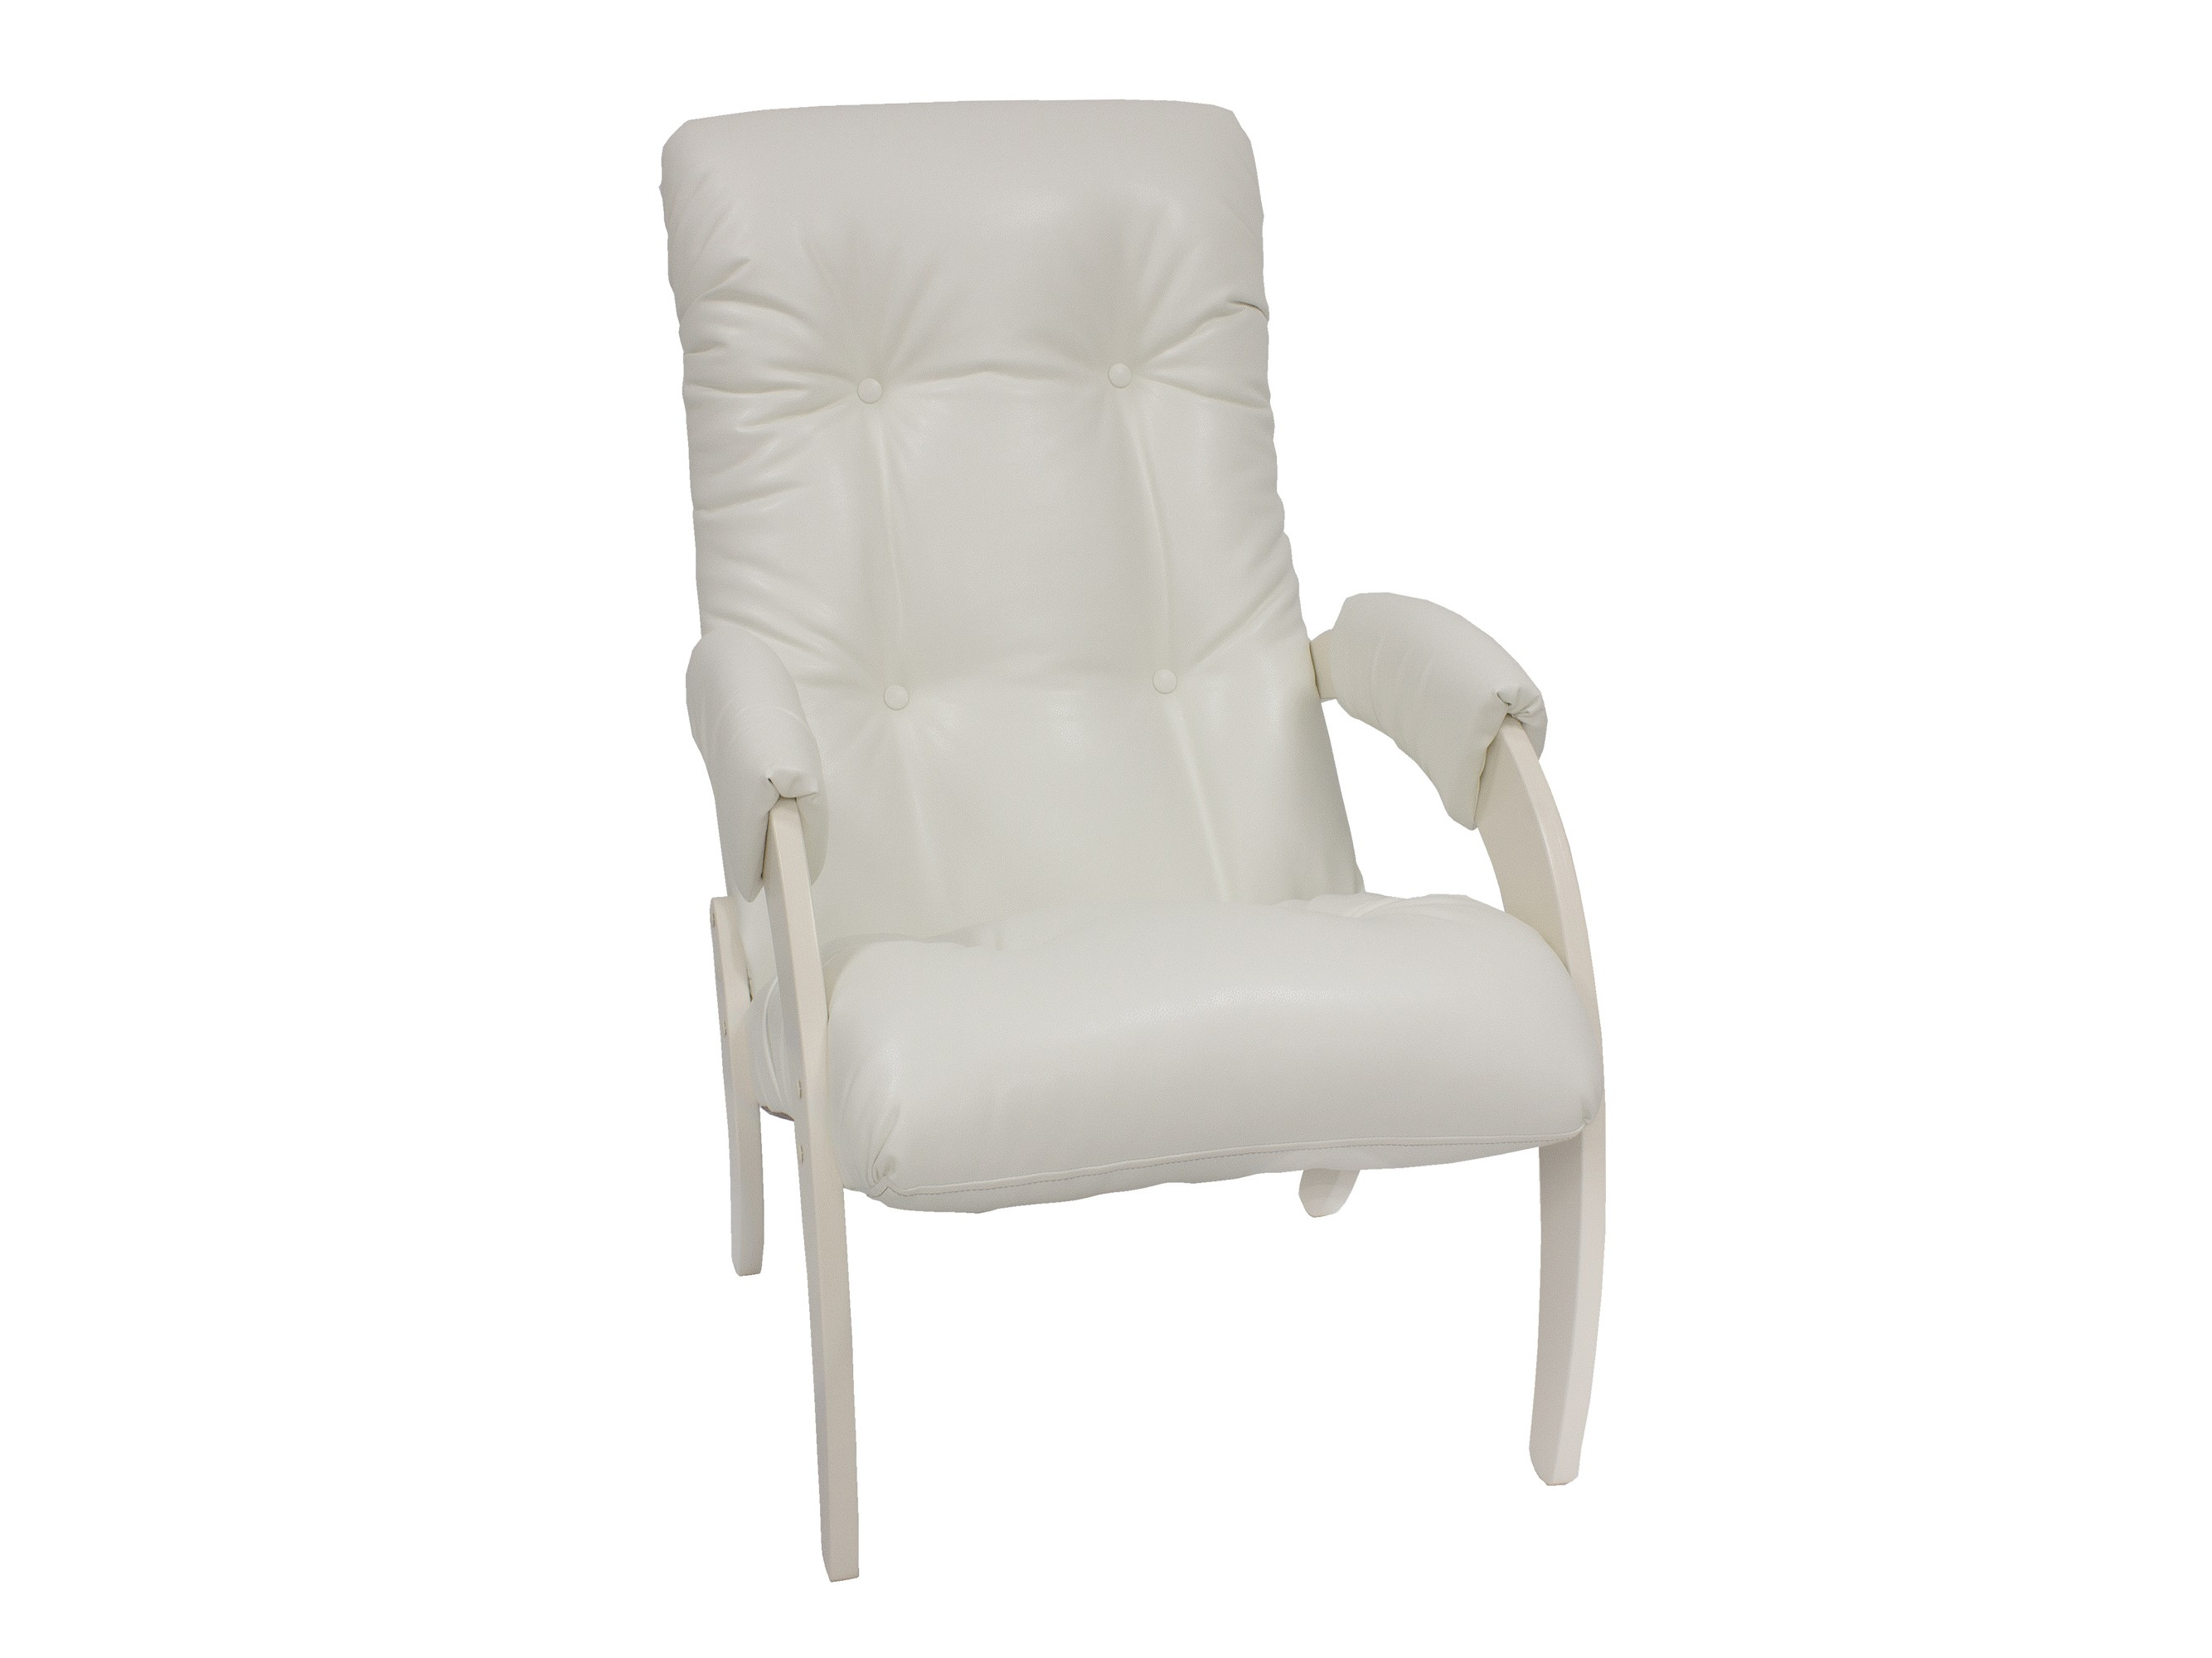 кресло для отдыха модель 61 mebelvia mango 002 экокожа берёзовая фанера Кресло для отдыха Модель 61 MebelVia Mango 002, Экокожа, Берёзовая фанера